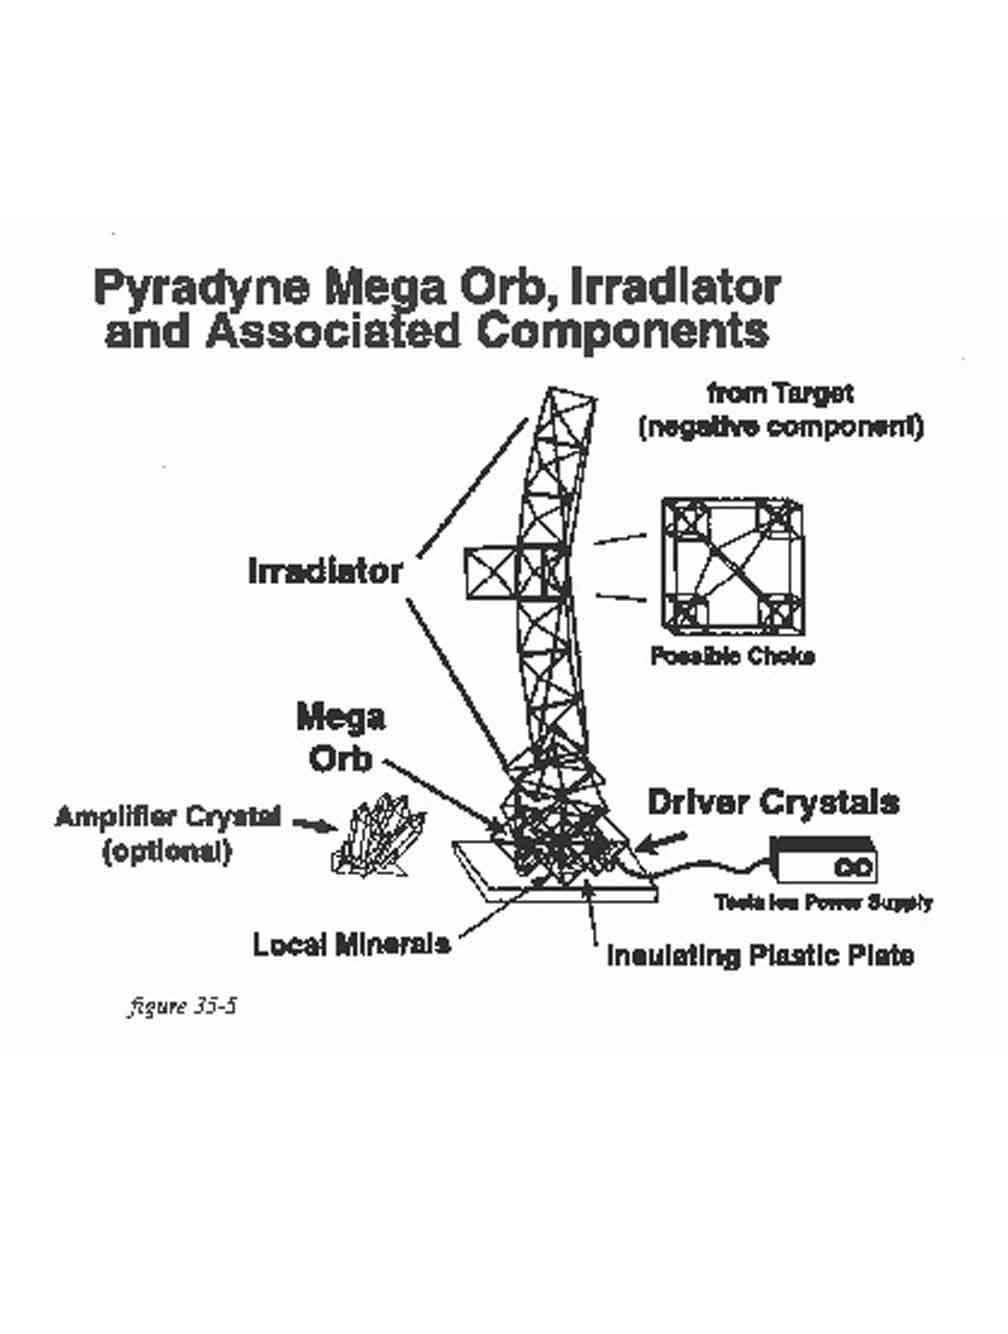 Irradiator and Mega Orb